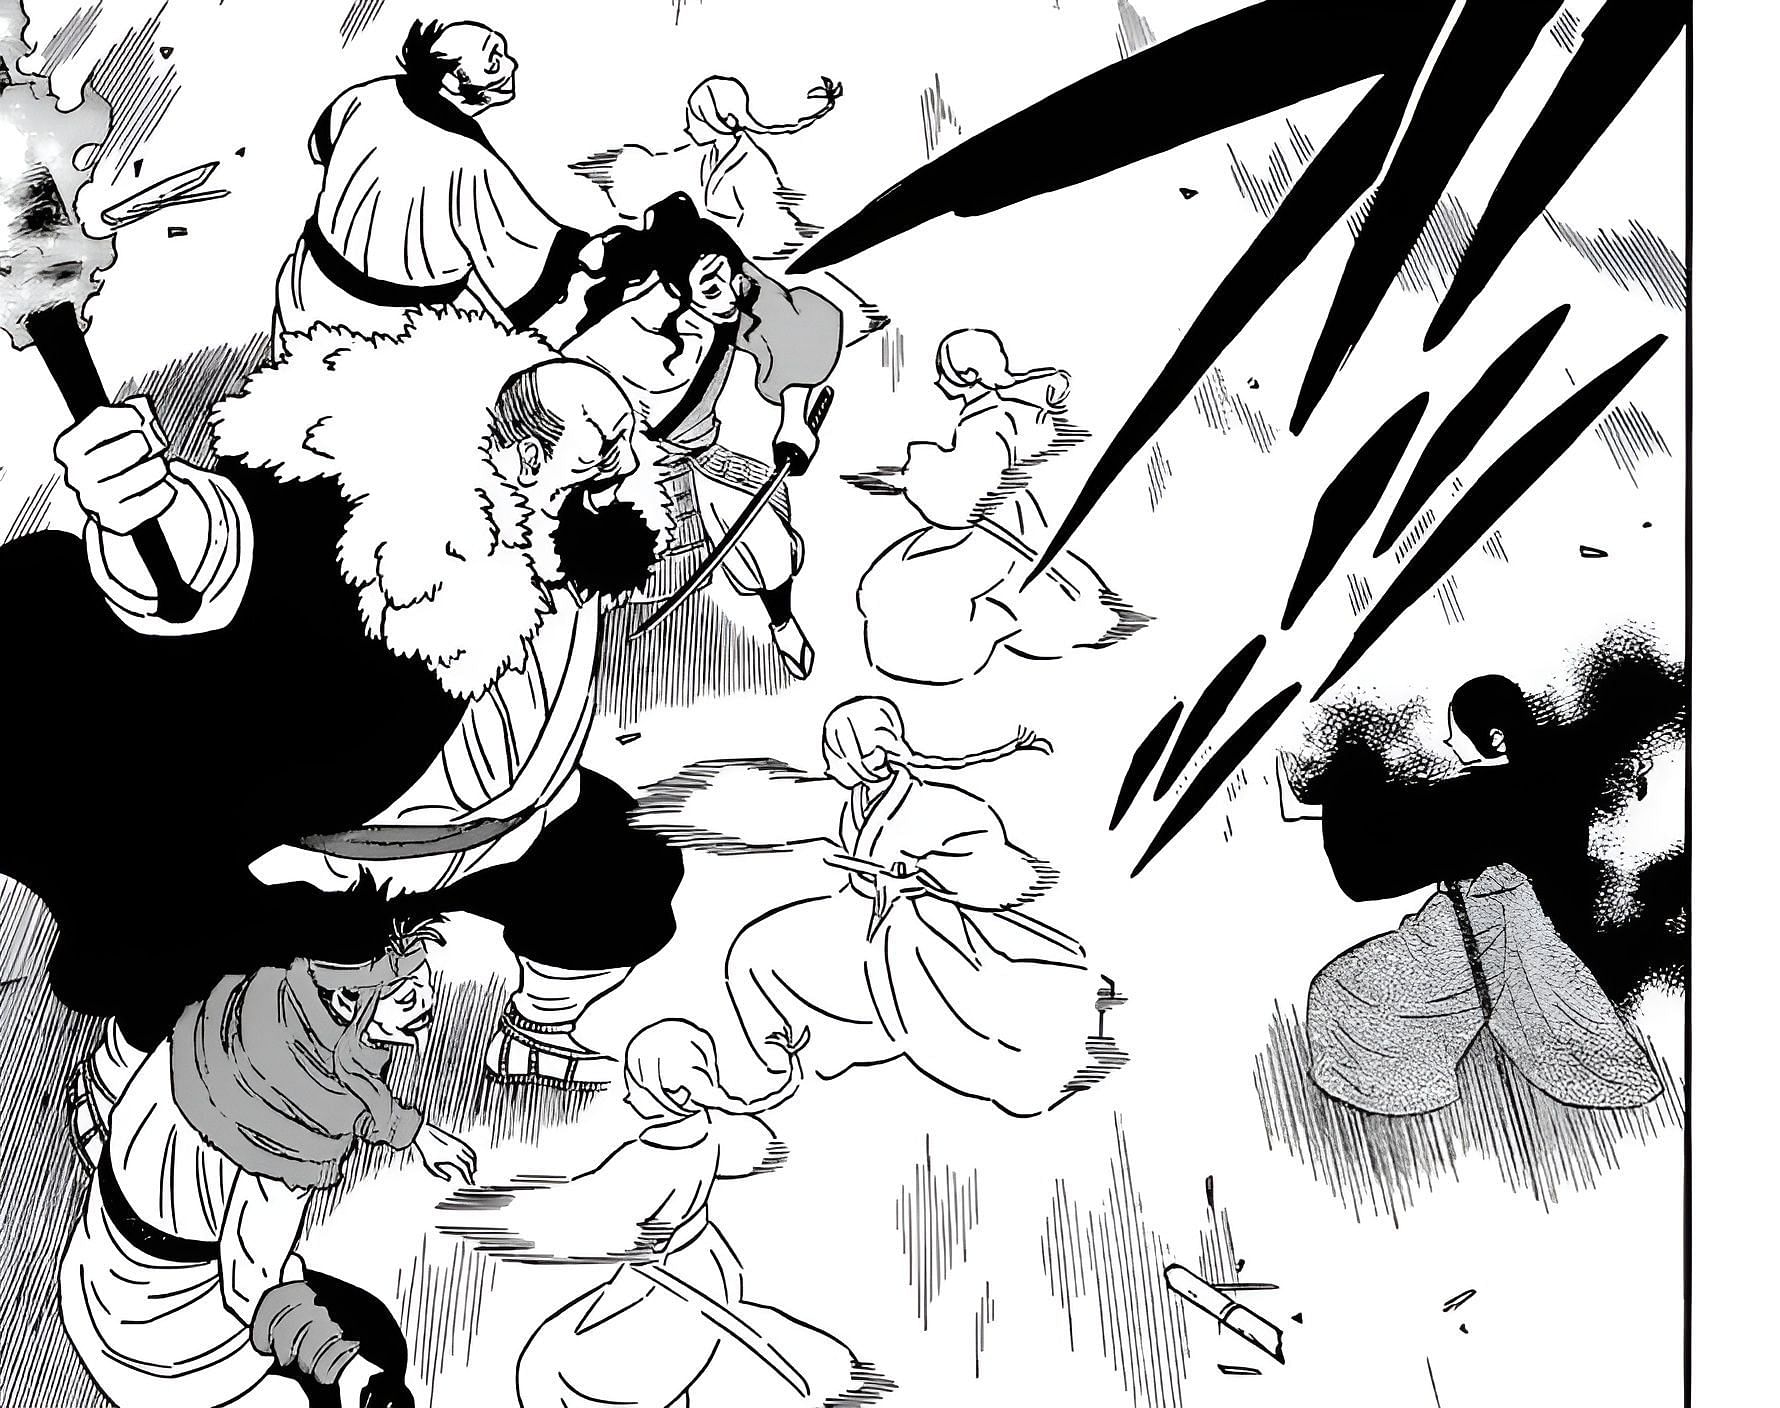 Ichika&#039;s Yojutsu as seen in Black Clover chapter 338 (Image via Yuki Tabata/Shueisha)